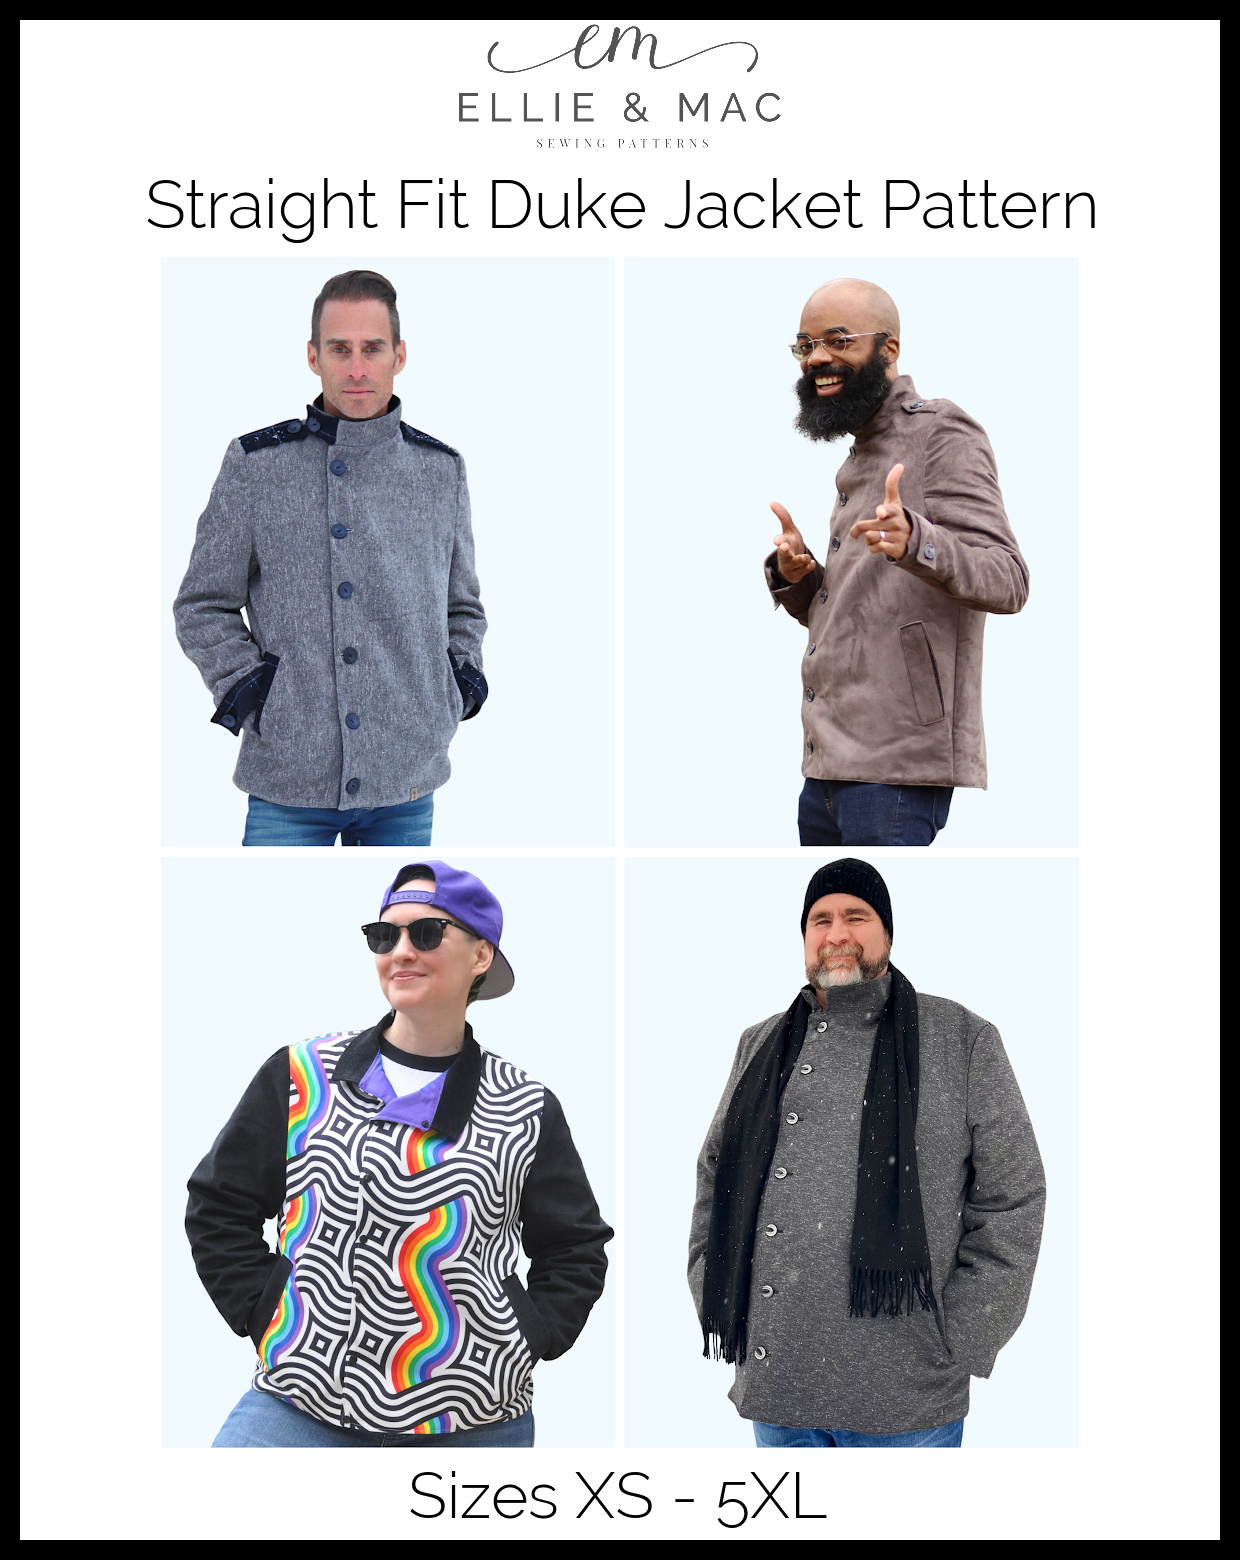 DUKE on X: Duke guide to trouser front style & fit. #Duke